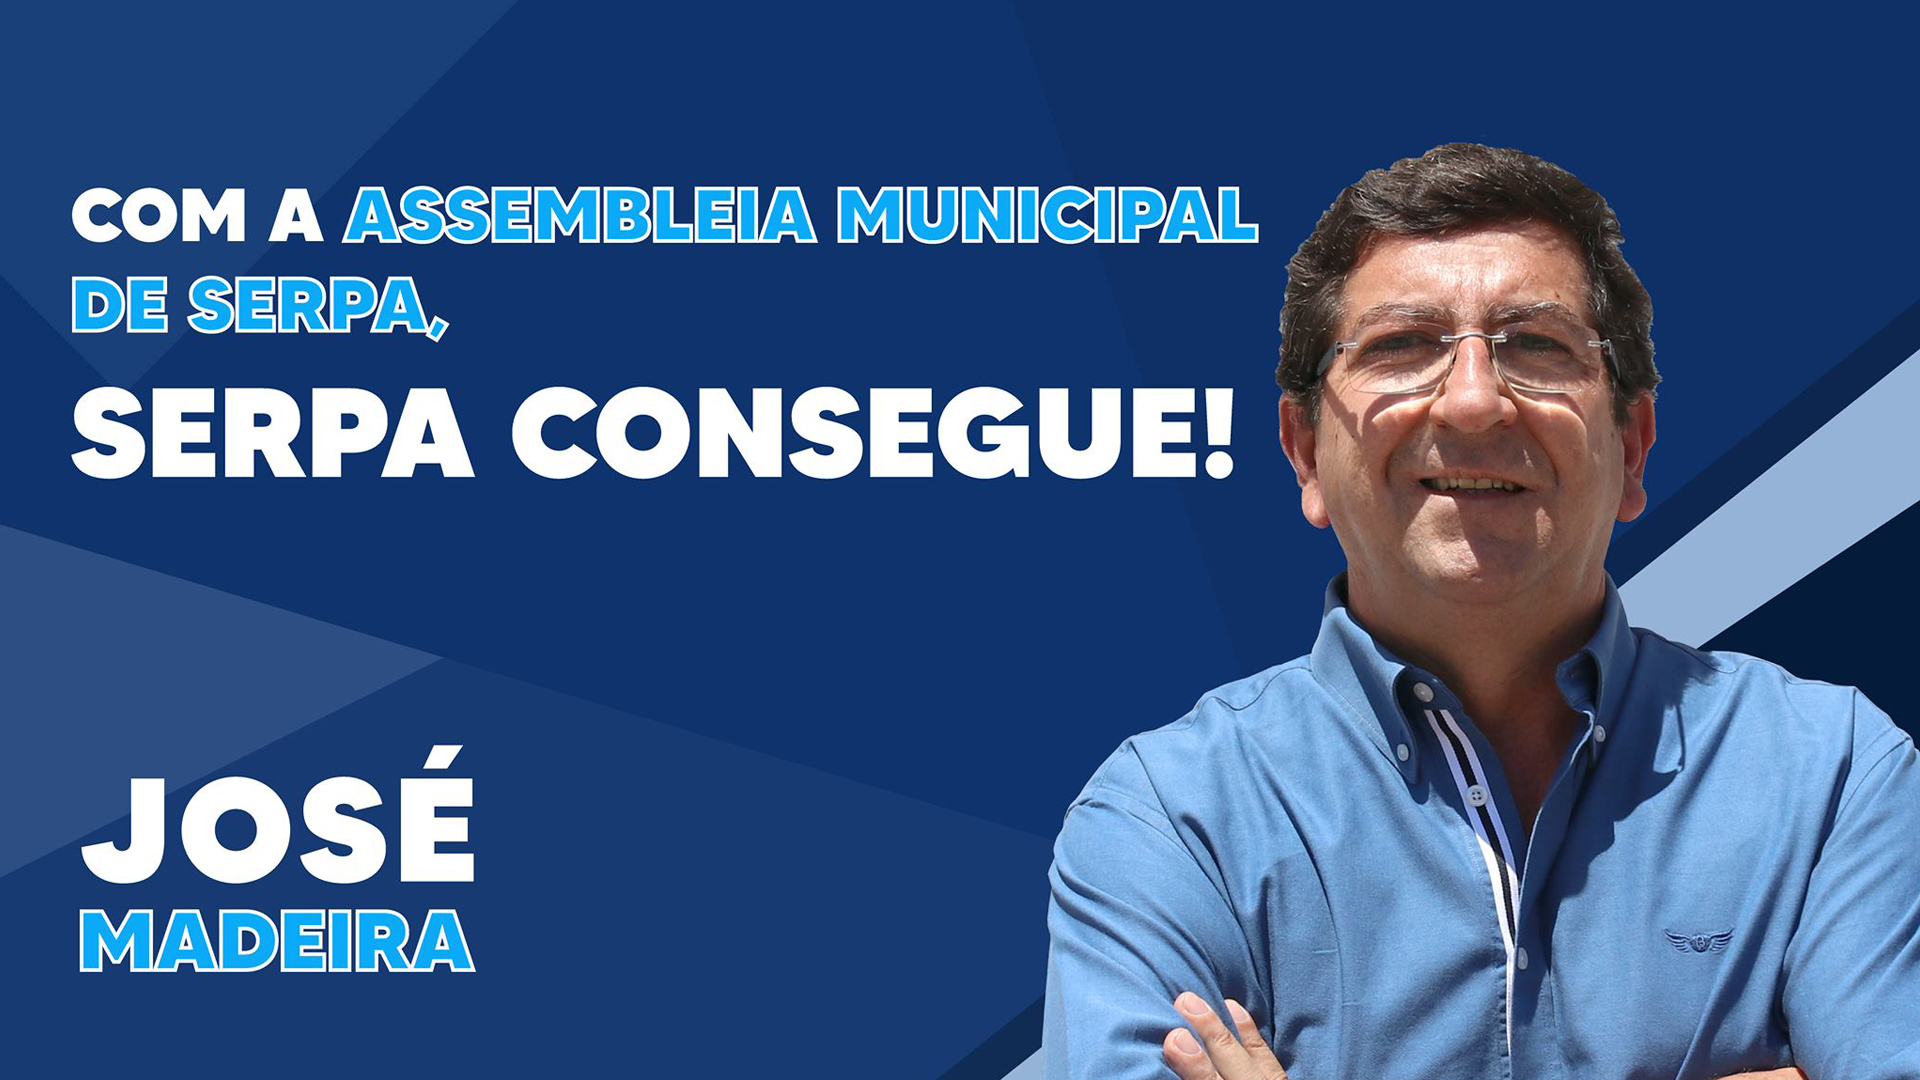 José Madeira é o candidato da coligação PSD/CDS-PP à AM de Serpa